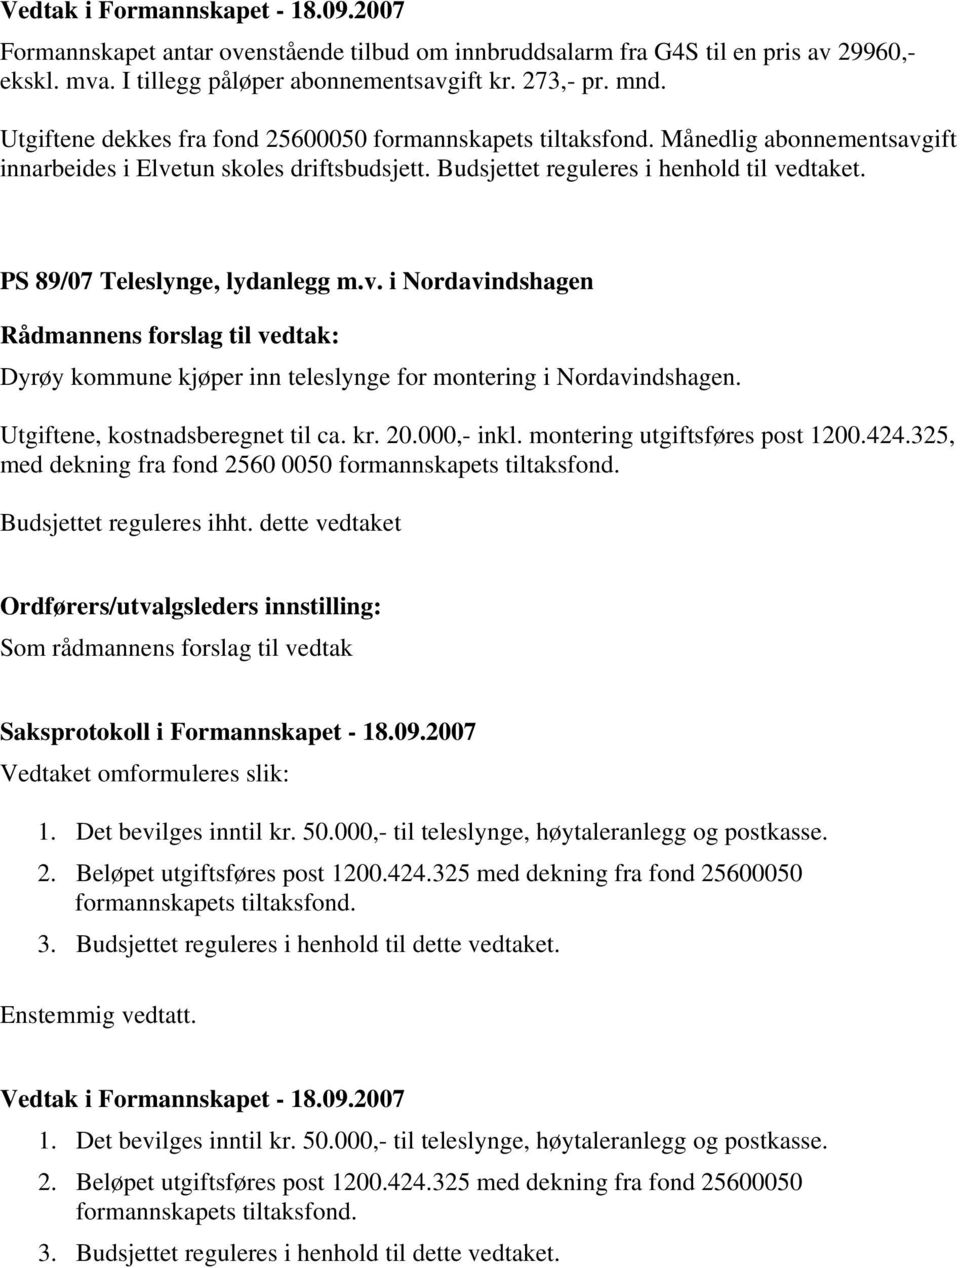 PS 89/07 Teleslynge, lydanlegg m.v. i Nordavindshagen Dyrøy kommune kjøper inn teleslynge for montering i Nordavindshagen. Utgiftene, kostnadsberegnet til ca. kr. 20.000,- inkl.